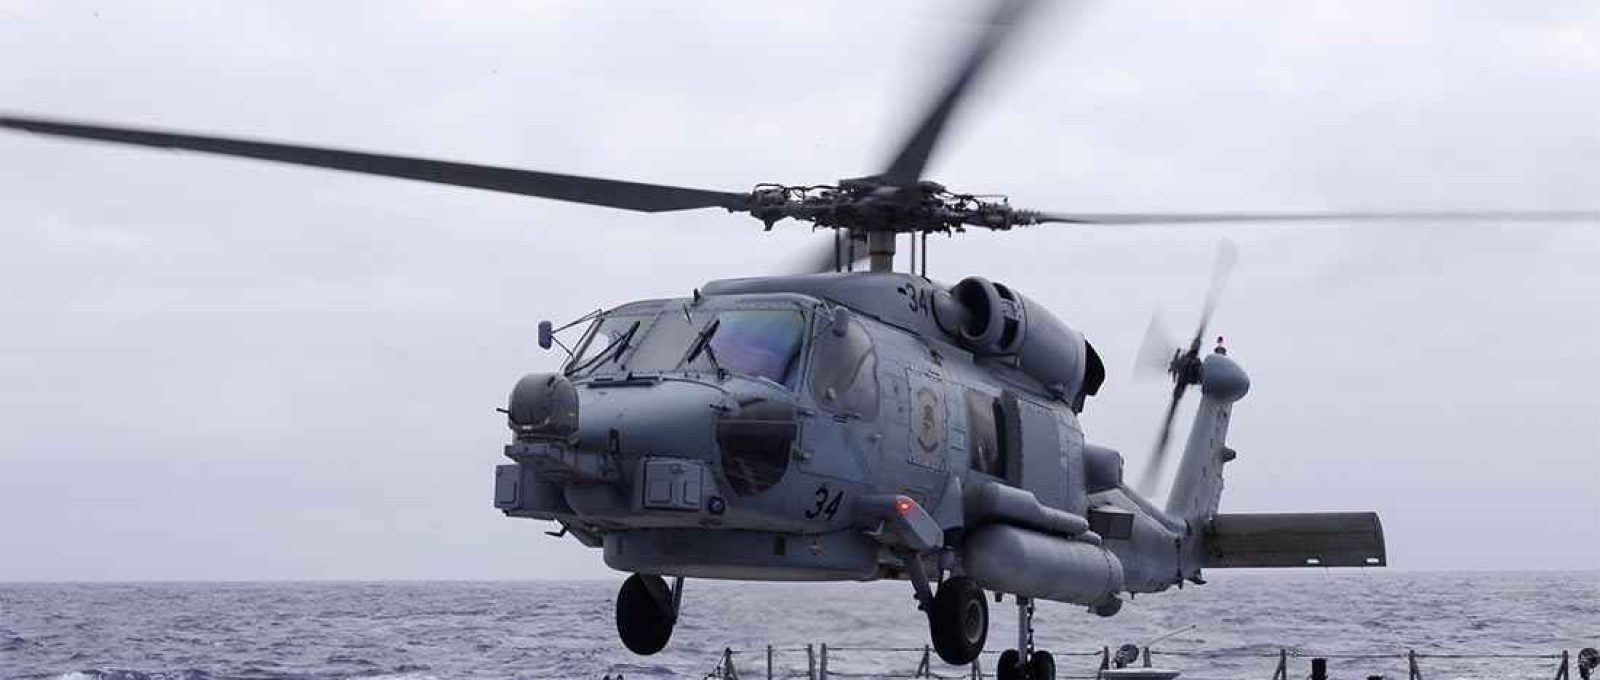 Helicóptero MH-60 (Foto: Tony Wright/US Navy).